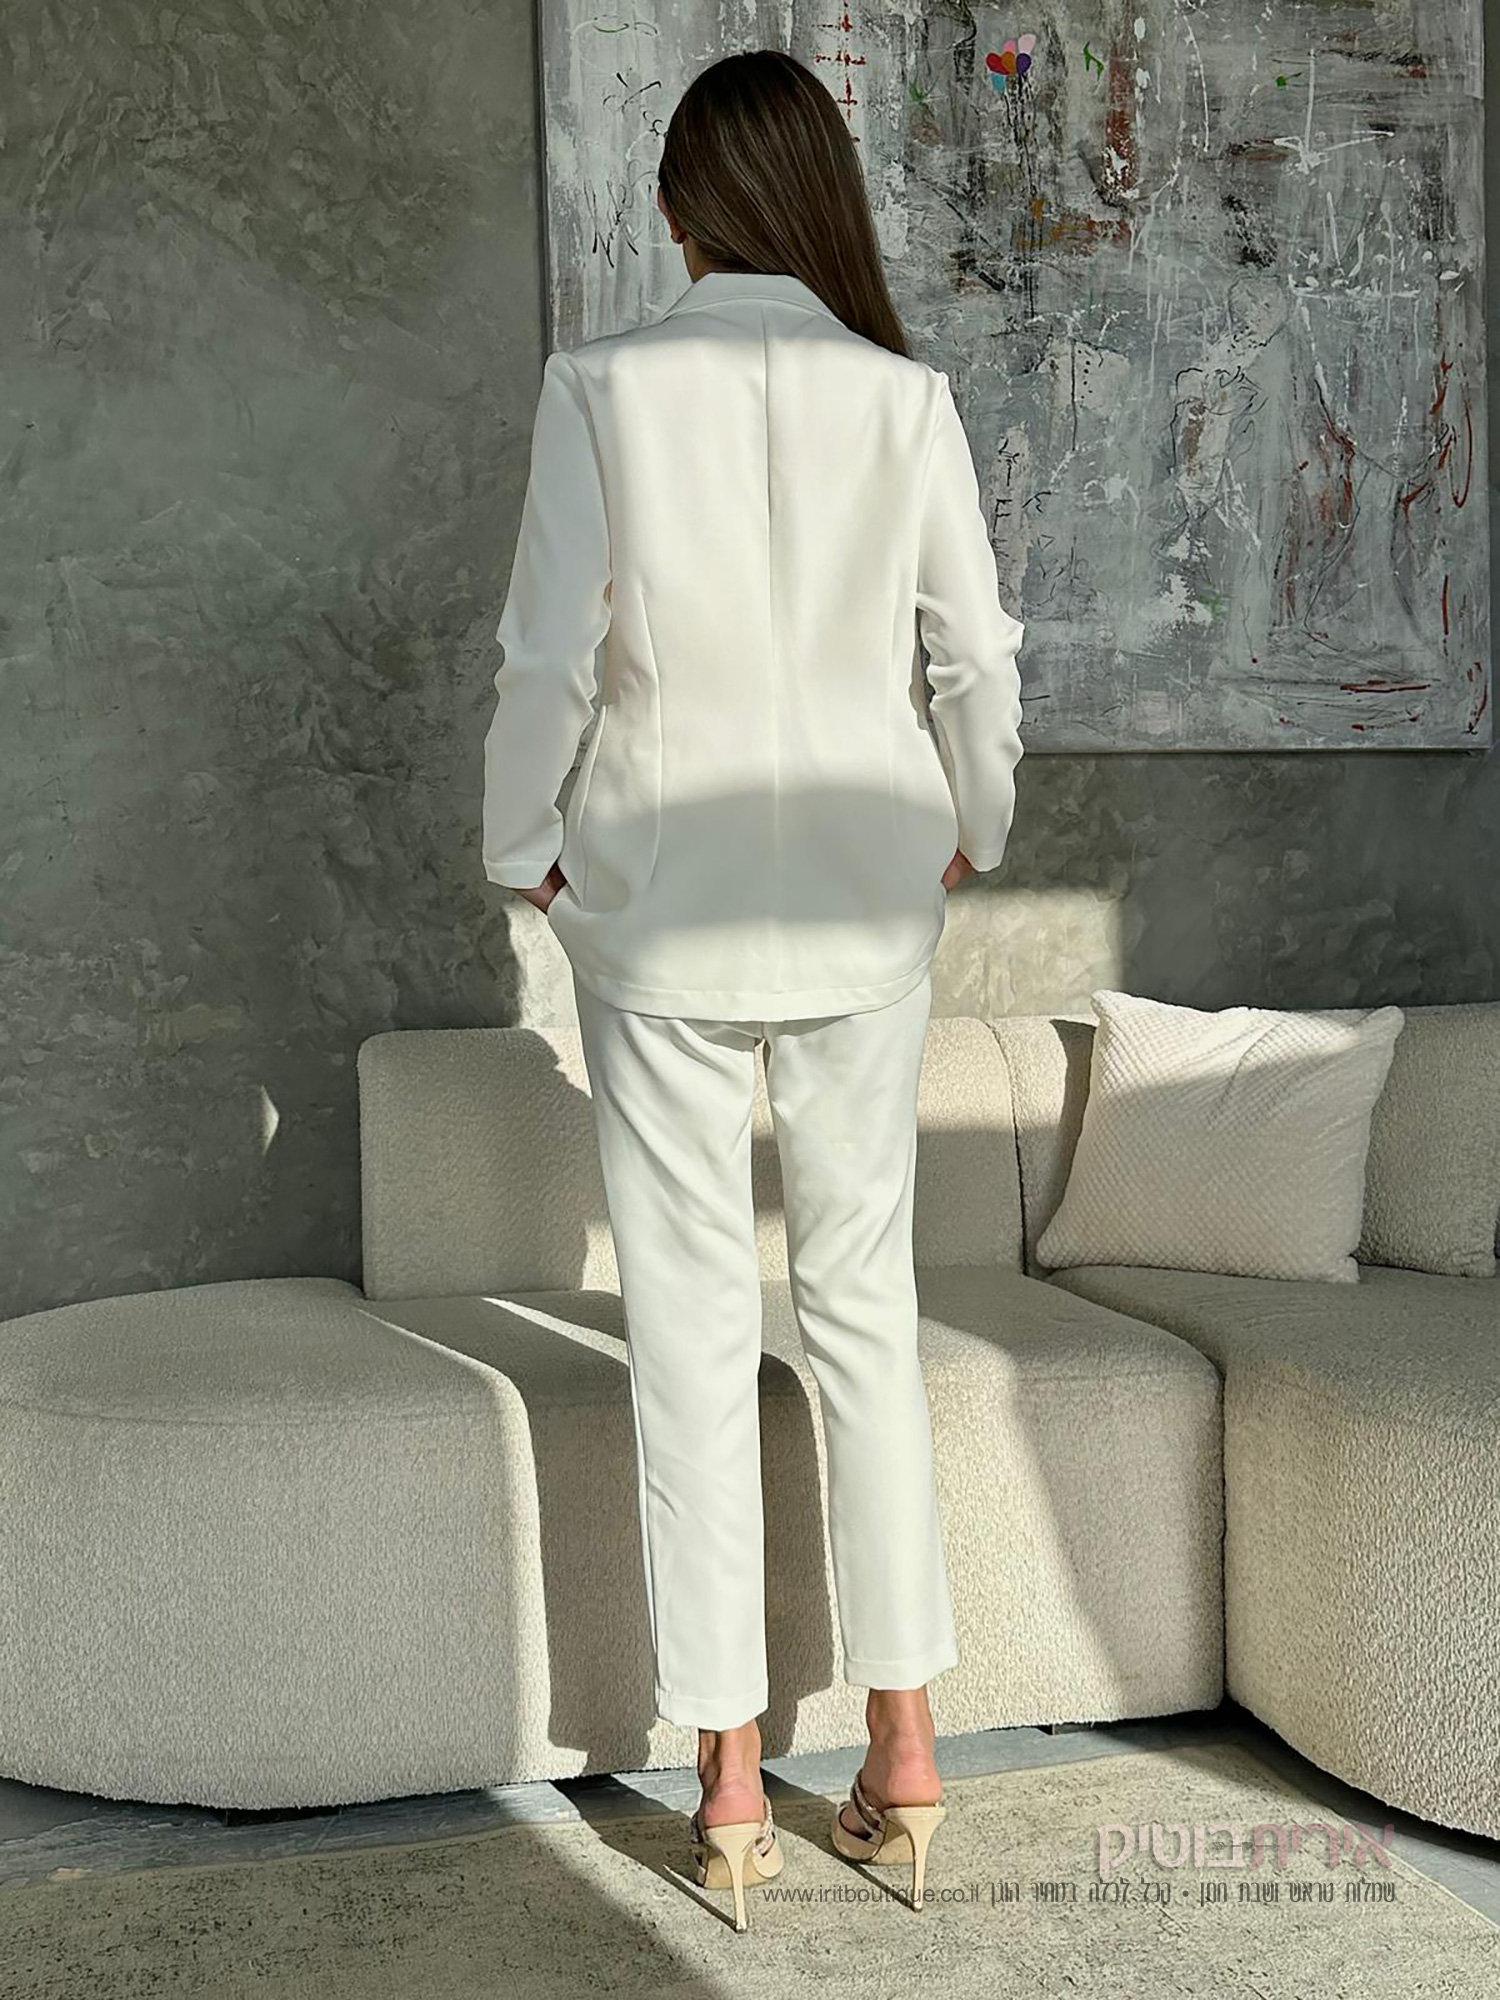 חליפה בצבע לבן נשים